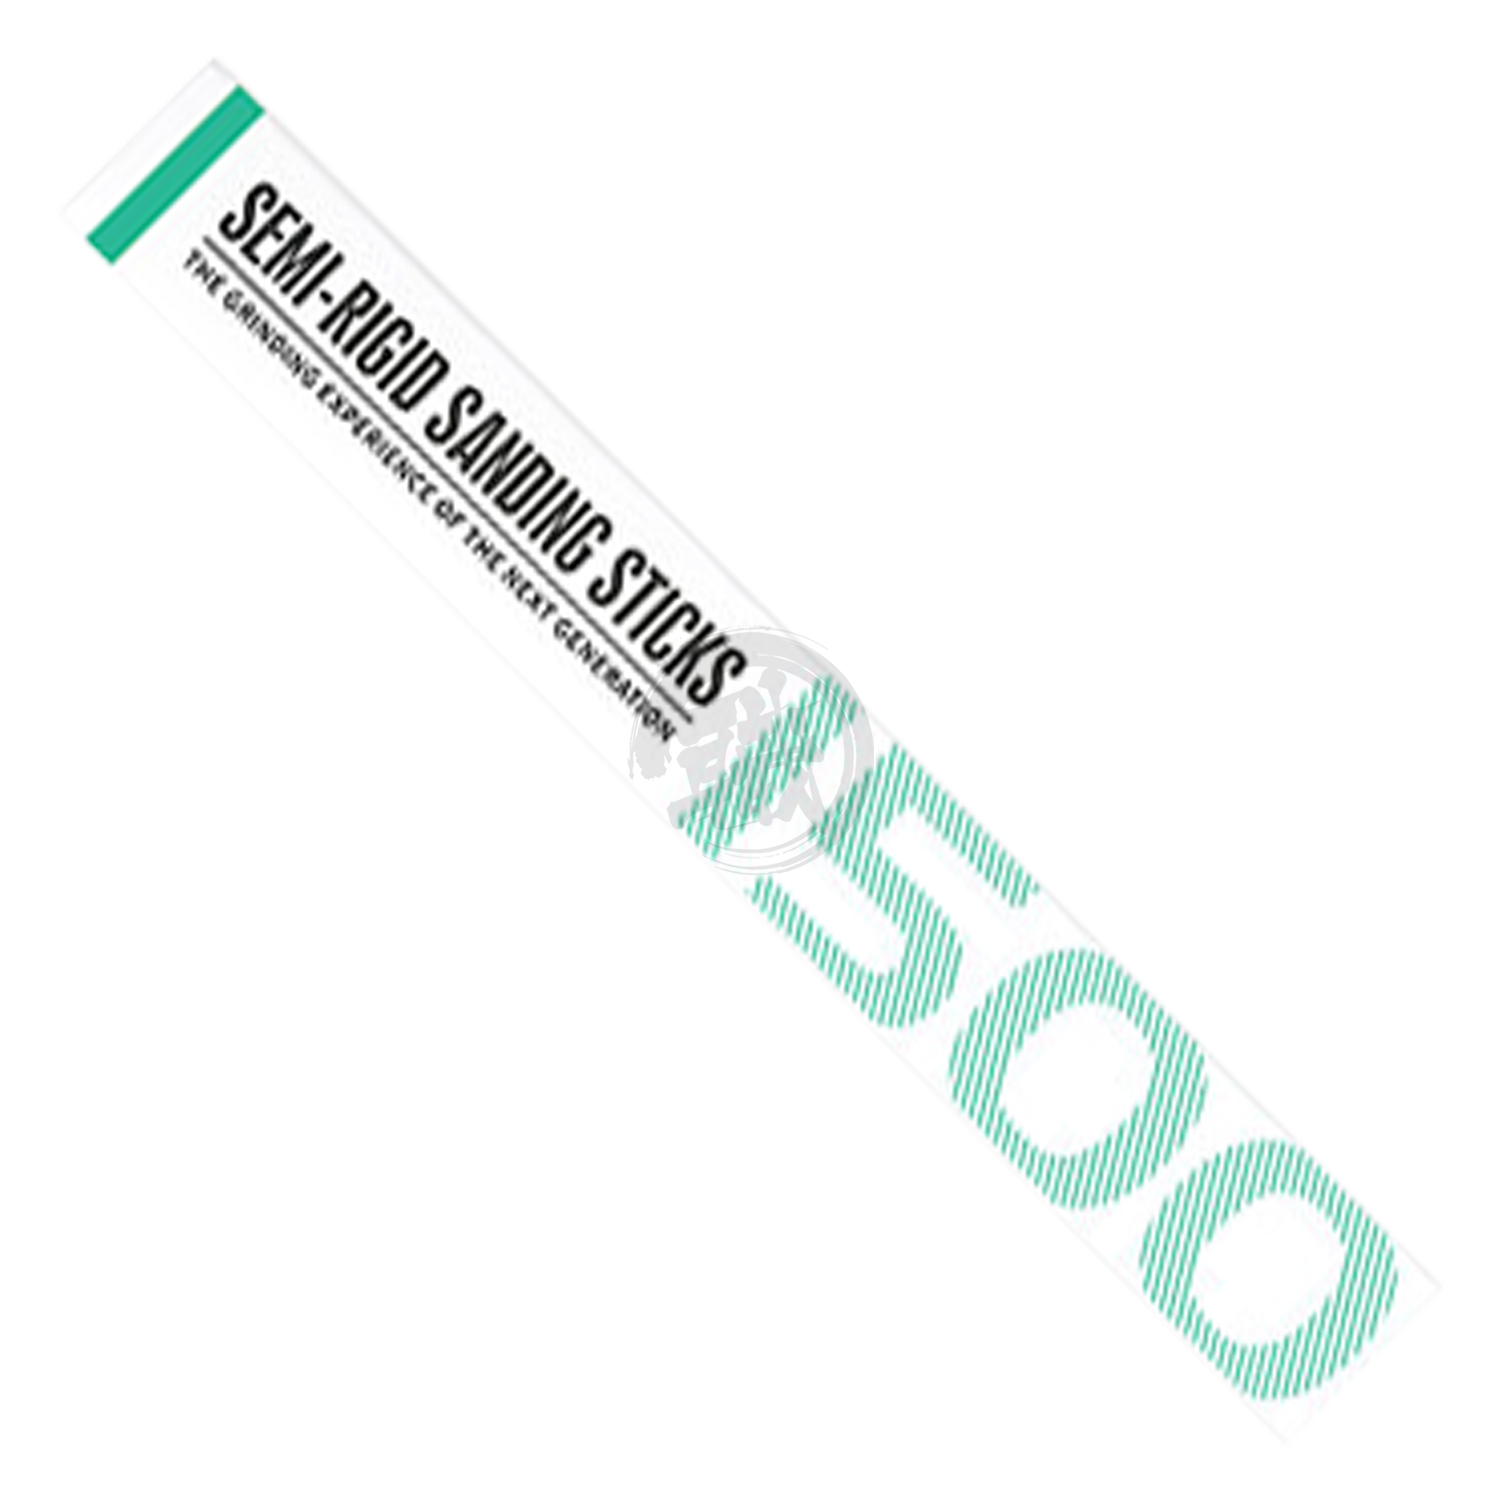 DSPIAE - Semi-Rigid Sanding Stick [#1500] - ShokuninGunpla